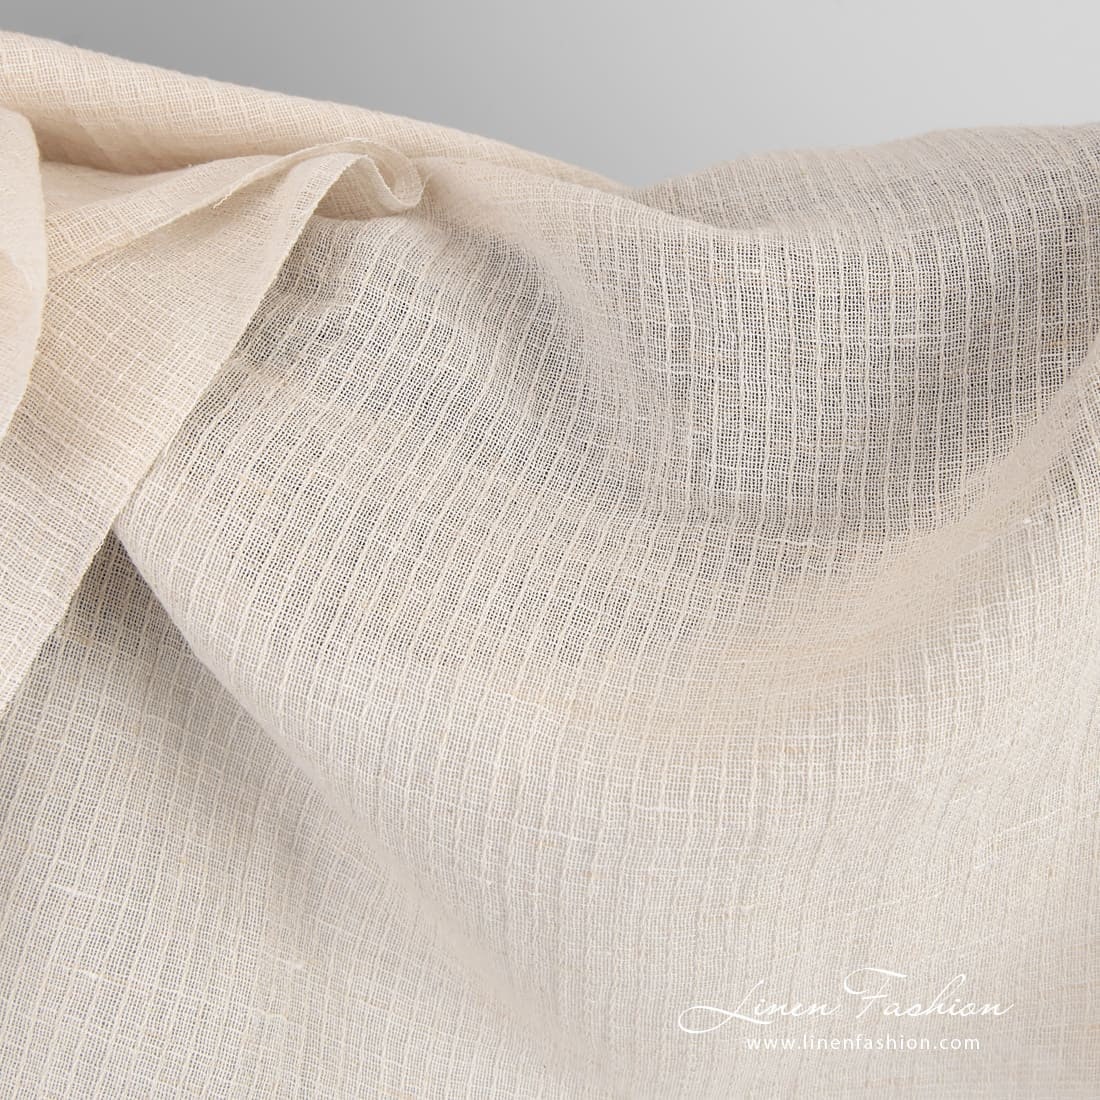 Tela de algodón lino beige transparente / Tela de algodón lino lavada / Ancho  145cm 5% peso 125 g / fabricado por Siulas, Lituania -  México